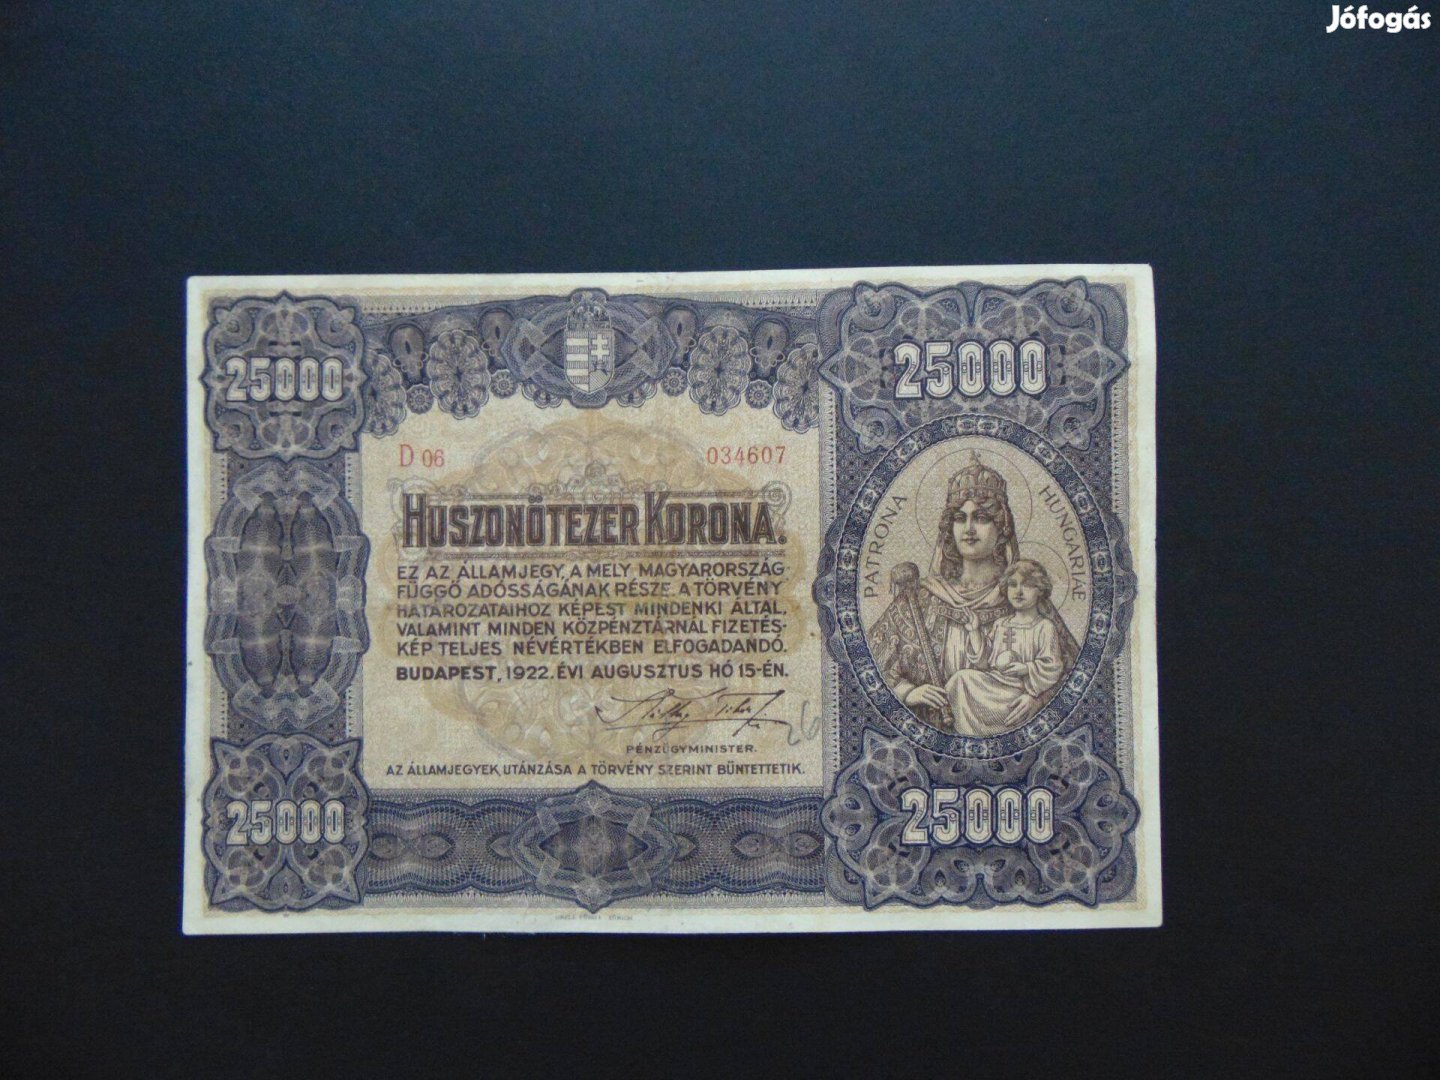 25000 korona 1922 Nagy méretű nagyon szép bankjegy